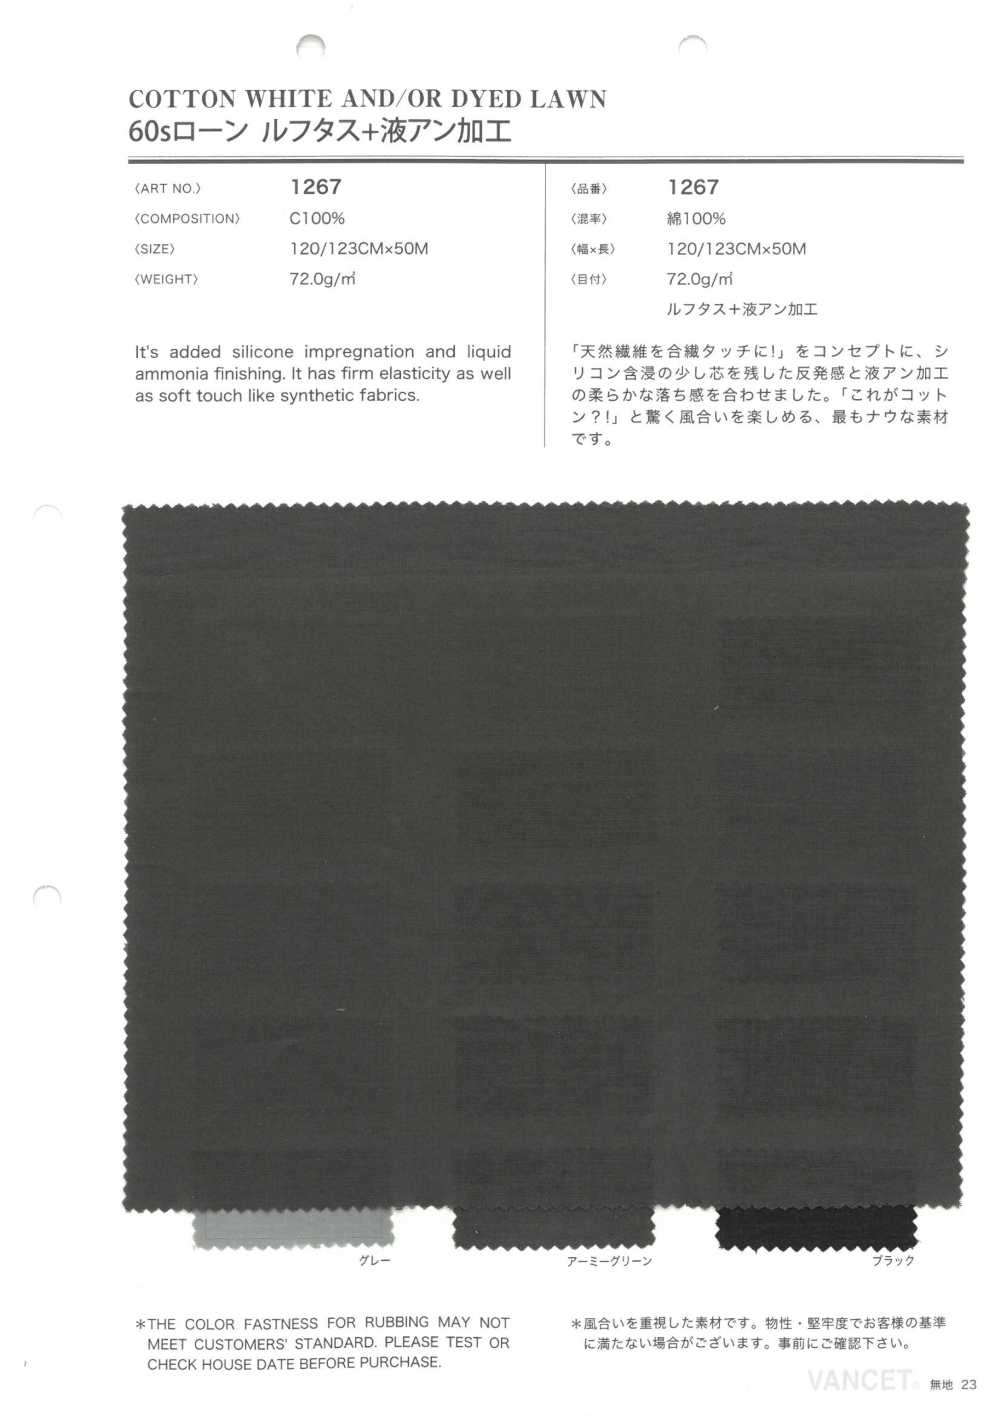 1267 60-Faden-Rasen + Flüssiges Ammoniak, Mercerisierung, Unverarbeitet[Textilgewebe] VANCET